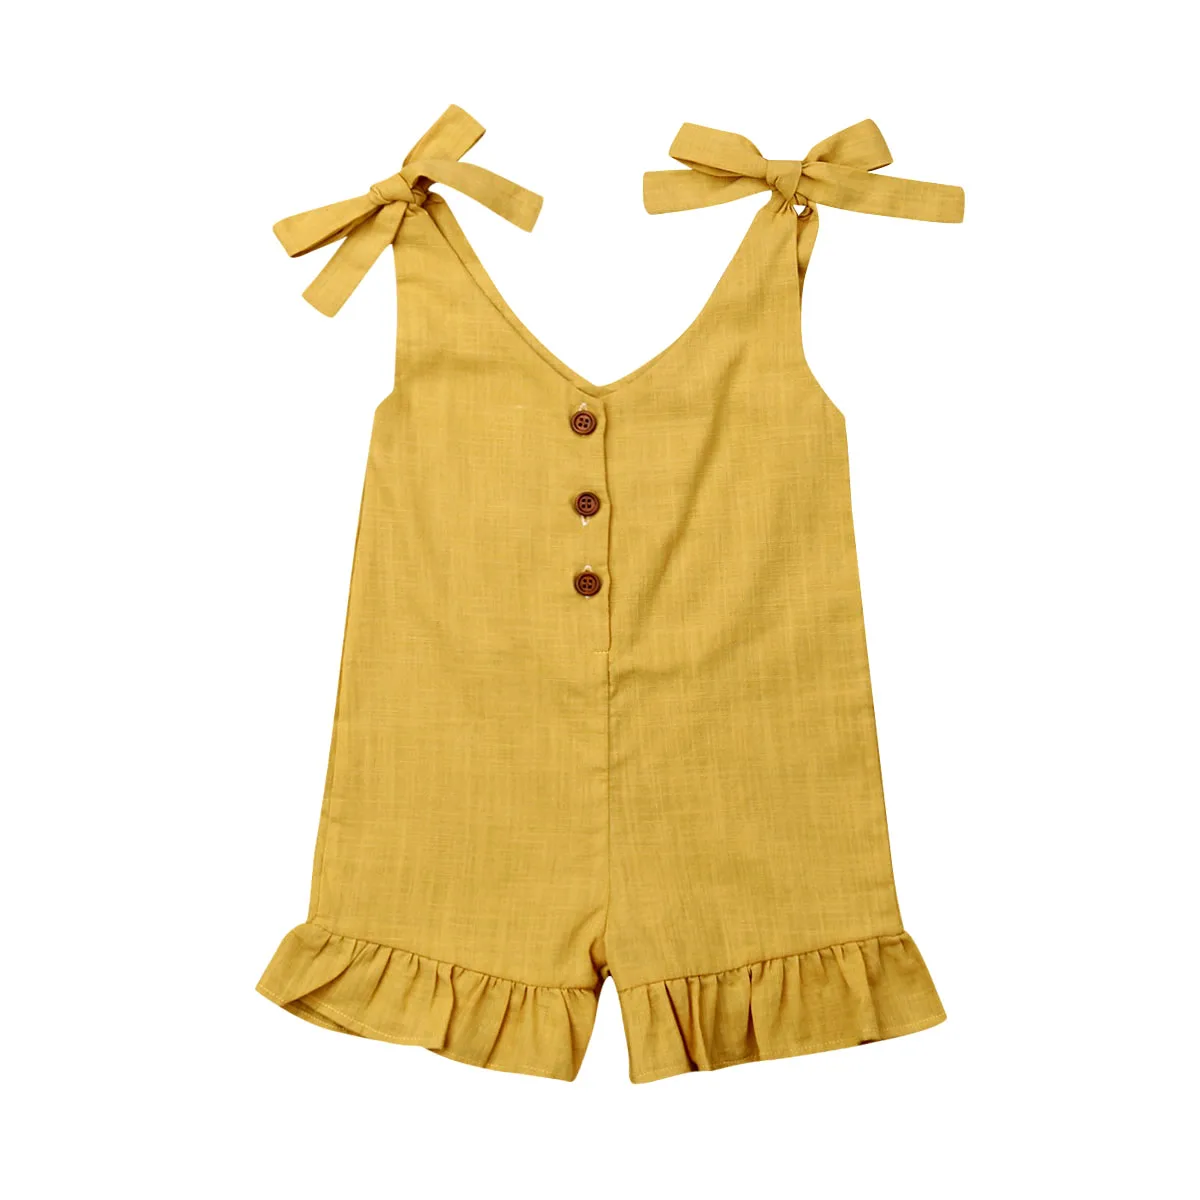 Г. Летний хлопковый льняной Комбинезон для маленьких девочек от 1 до 6 лет однотонный зимний комбинезон без рукавов на пуговицах, одежда - Цвет: Цвет: желтый